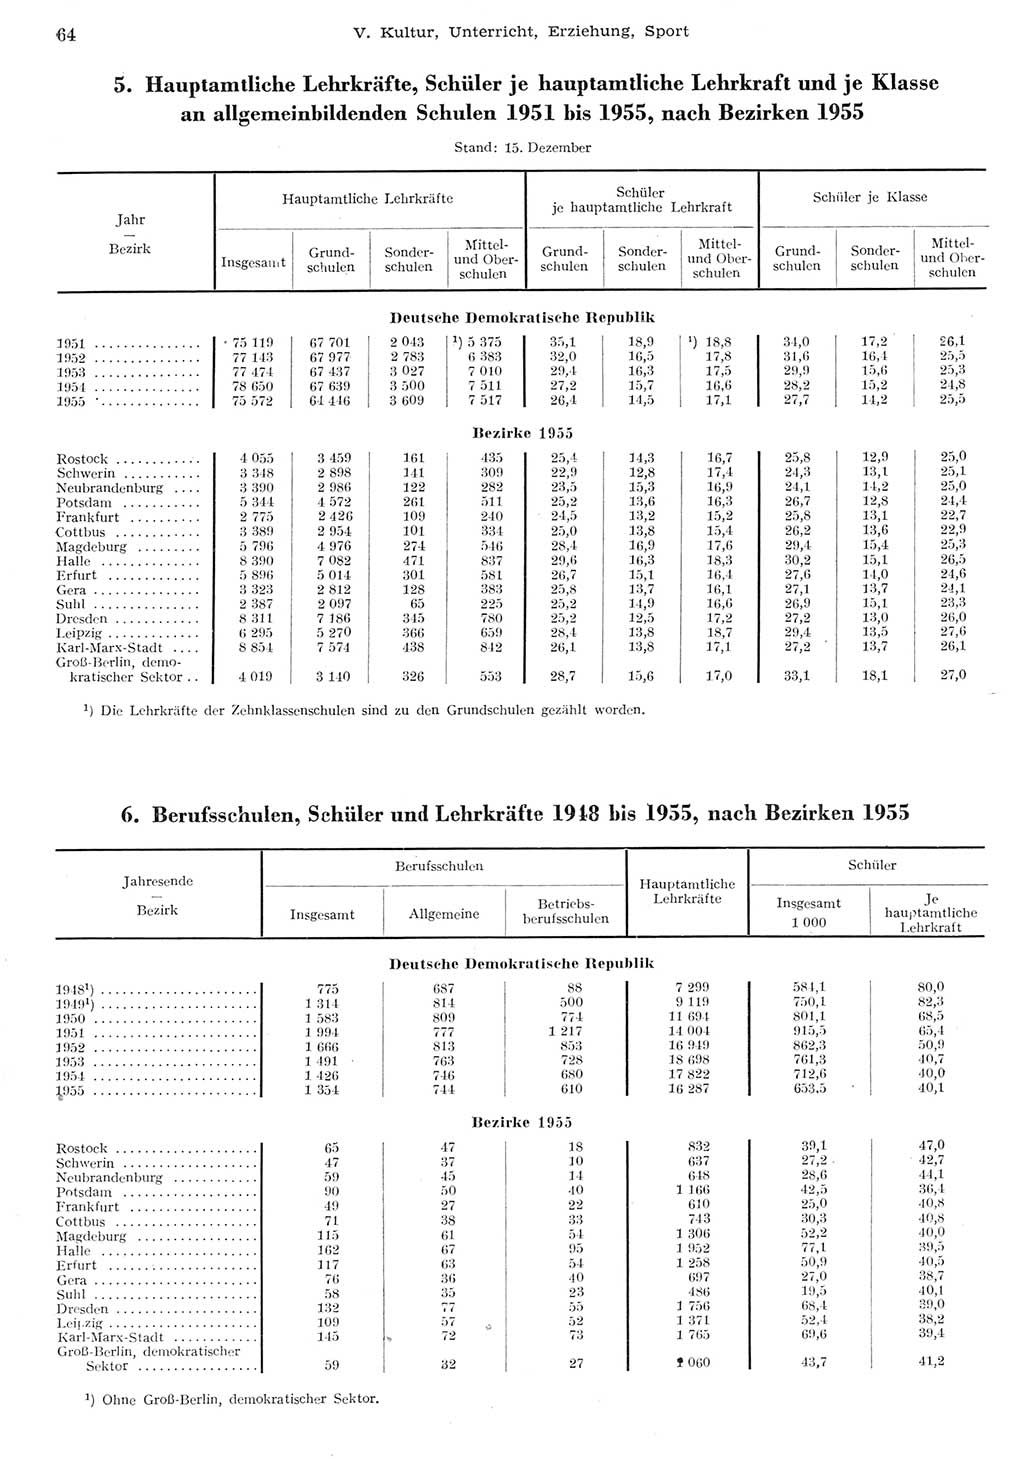 Statistisches Jahrbuch der Deutschen Demokratischen Republik (DDR) 1955, Seite 64 (Stat. Jb. DDR 1955, S. 64)